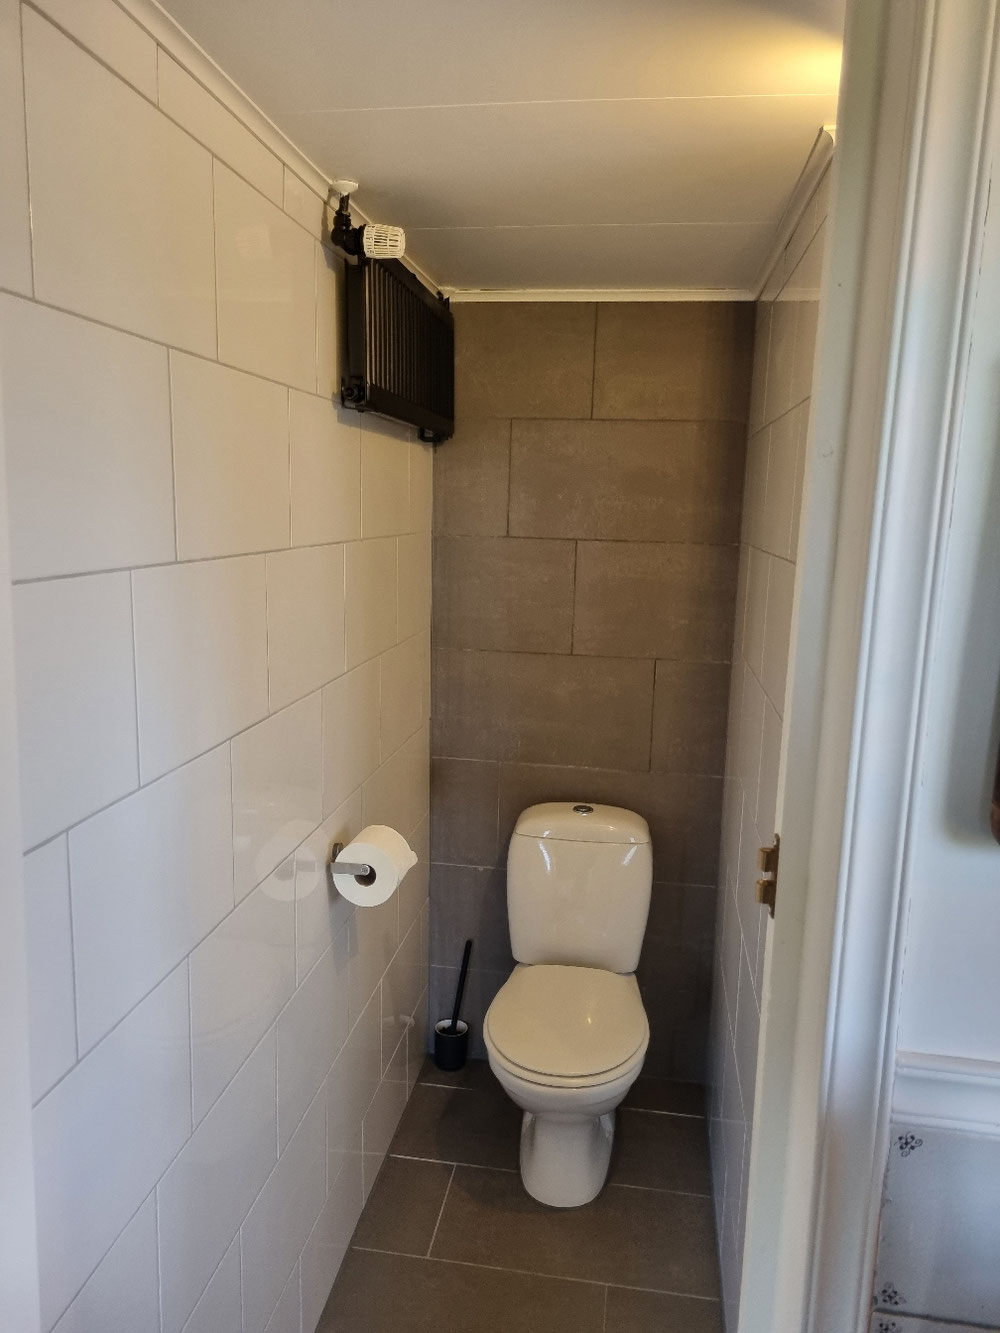 Het toilet welke zicht bevind in de badkamer